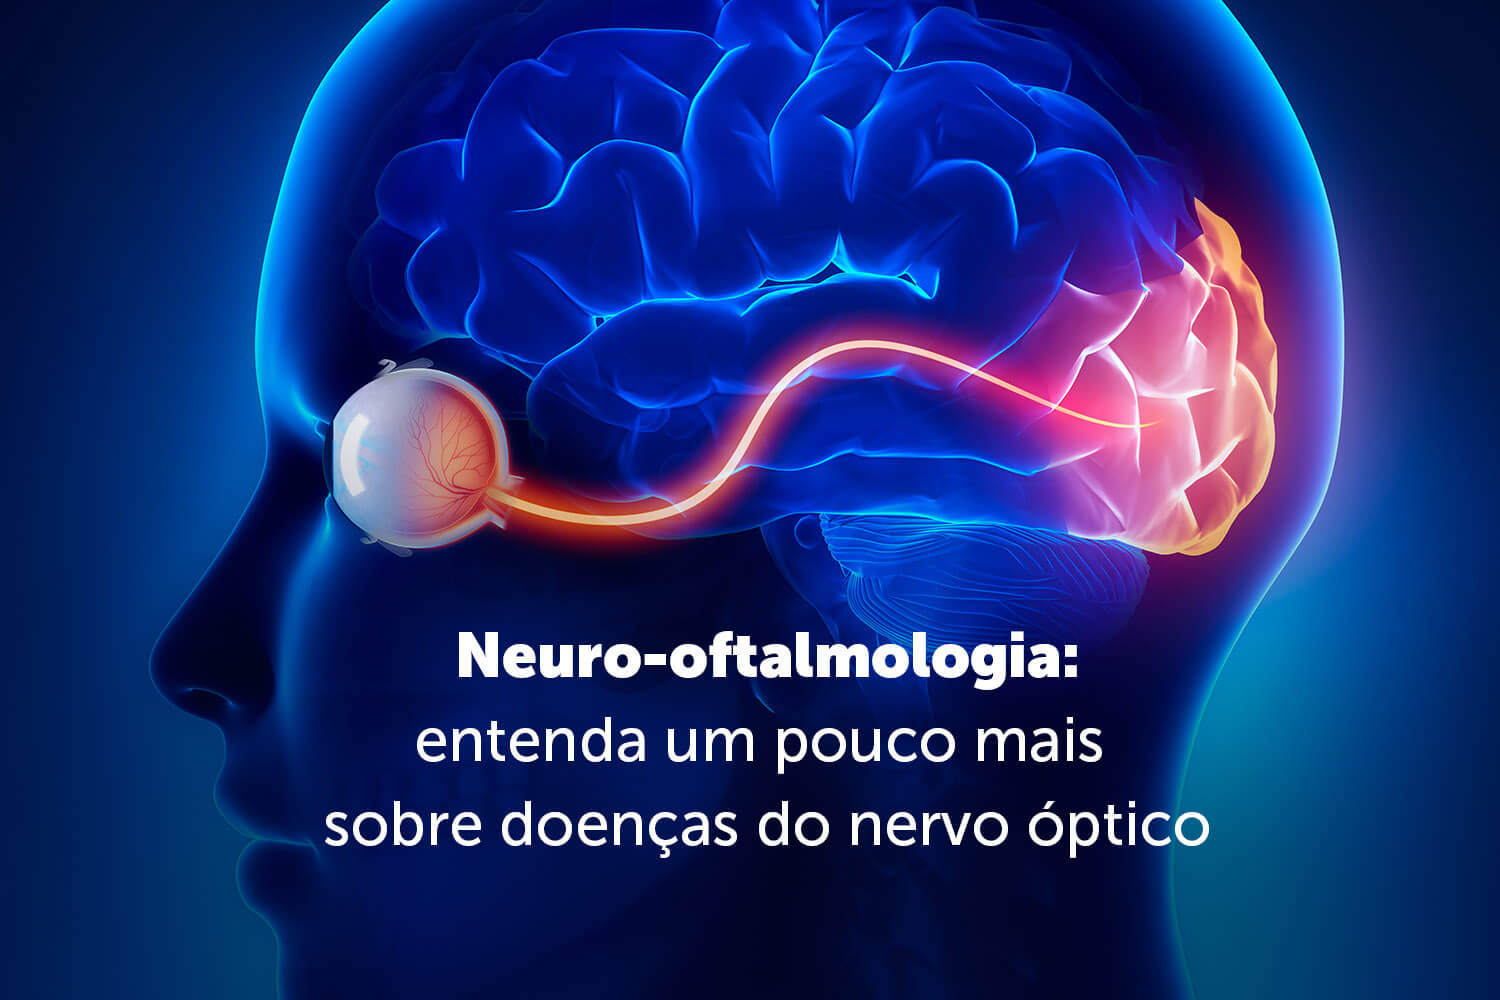 Neuro-oftalmologia